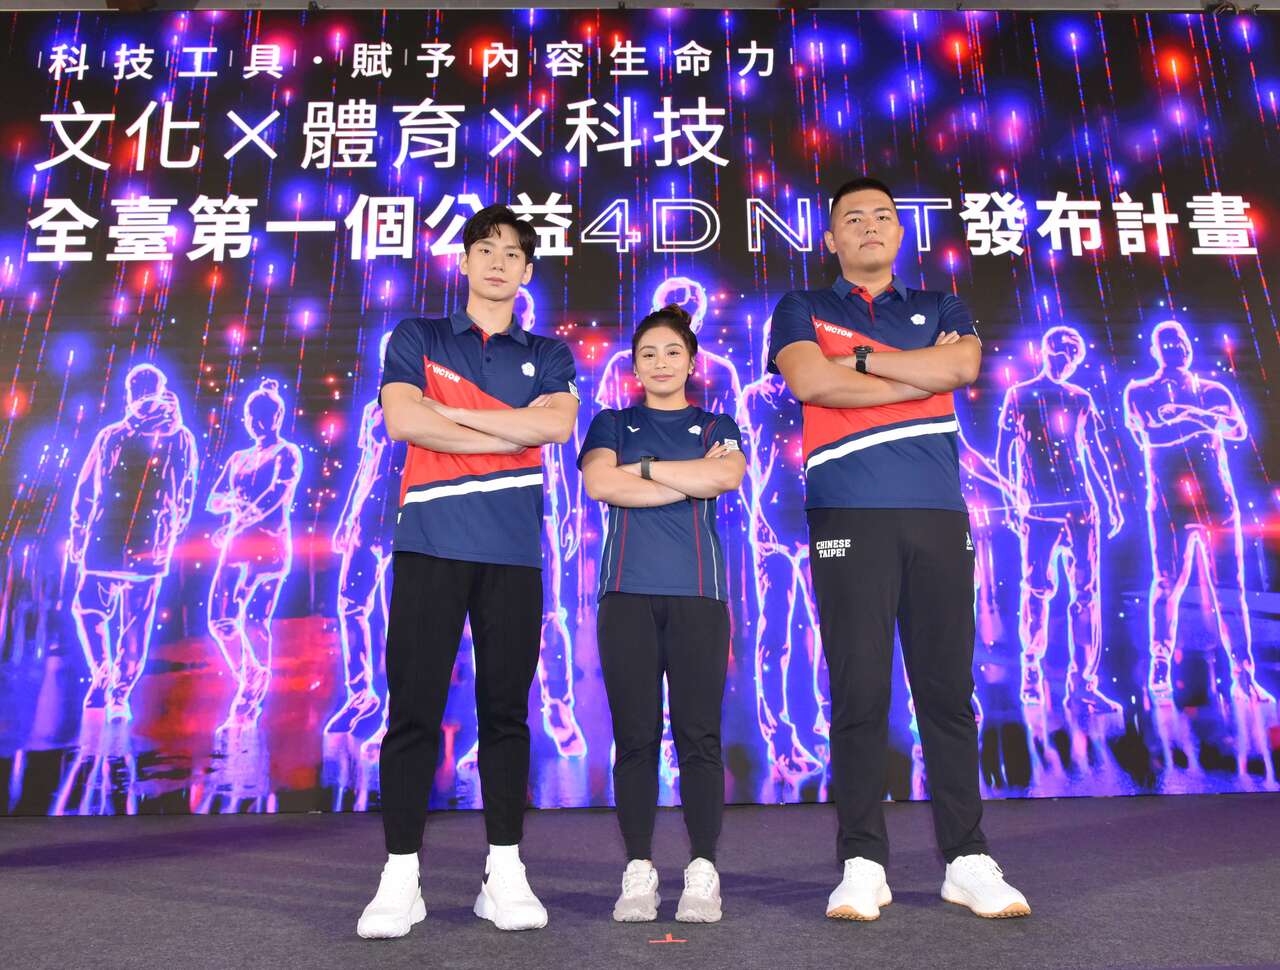 臺灣第一個4D NFT，邀請九位備受期待的臺灣體壇新星紀錄下運動員動態並以NFT形式典藏。奧會提供